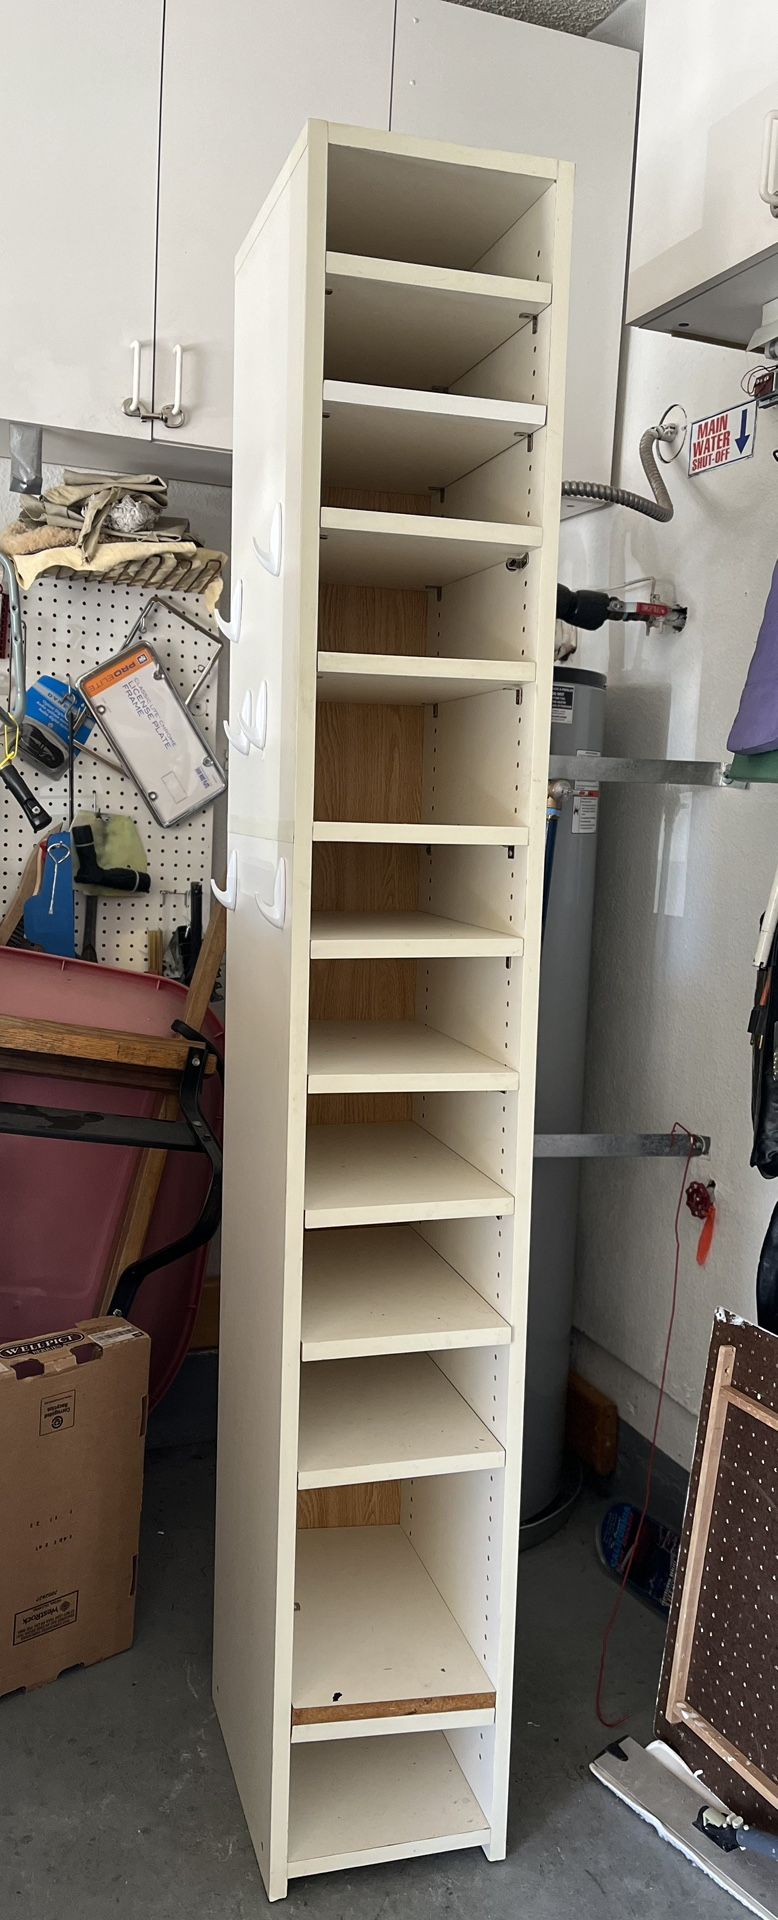 Cabinet/Shelves